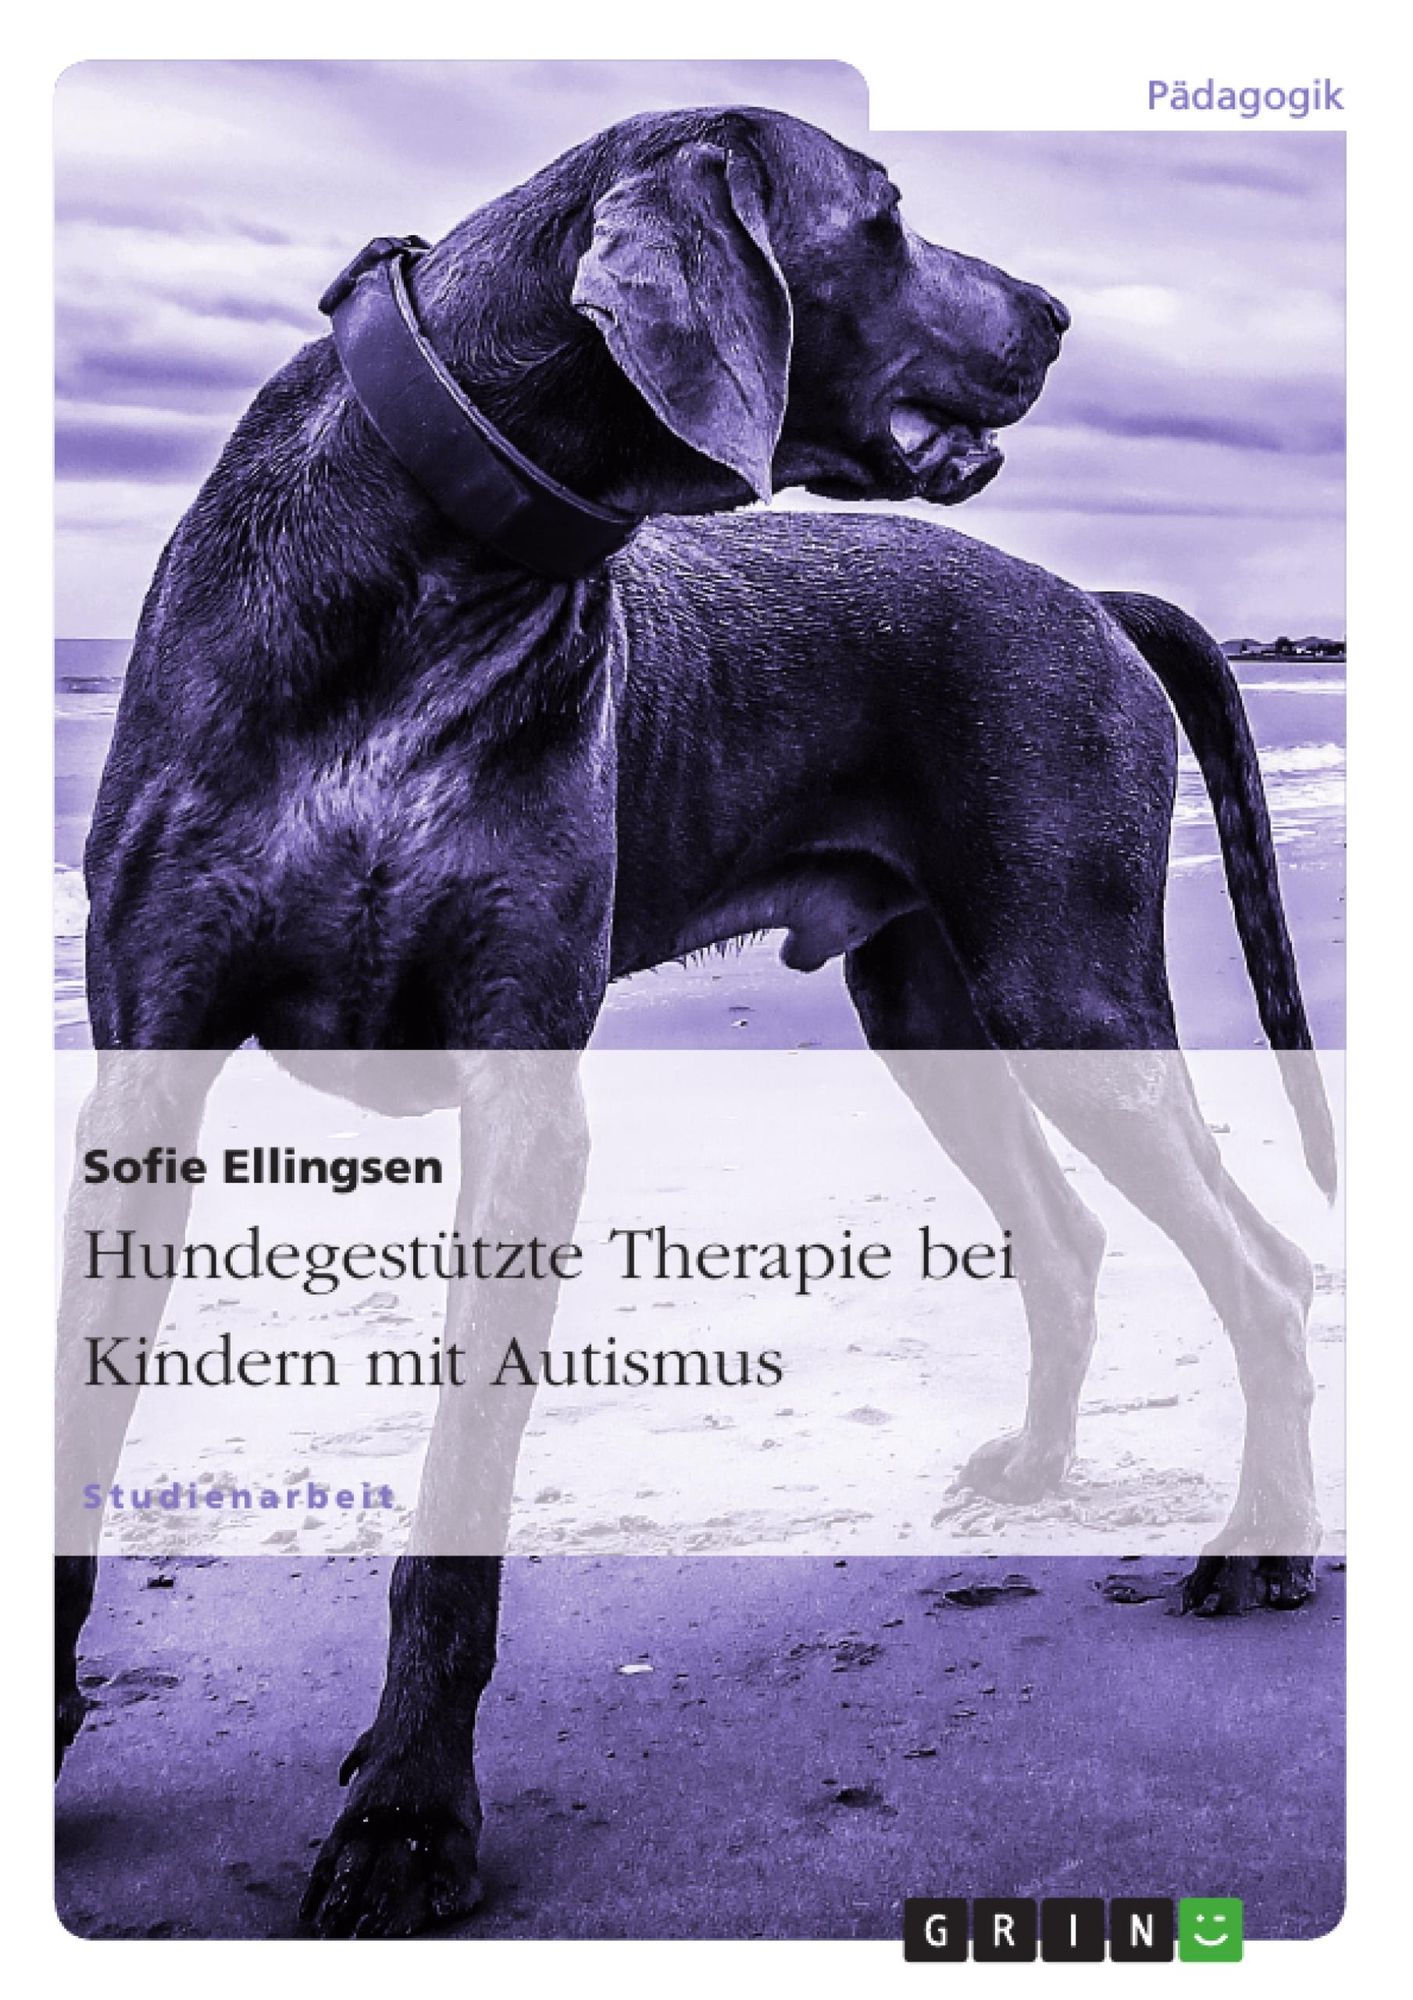 Rå Tæmme maske Hundegestützte Therapie bei Kindern mit Autismus von Sofie Ellingsen - Buch  | Thalia